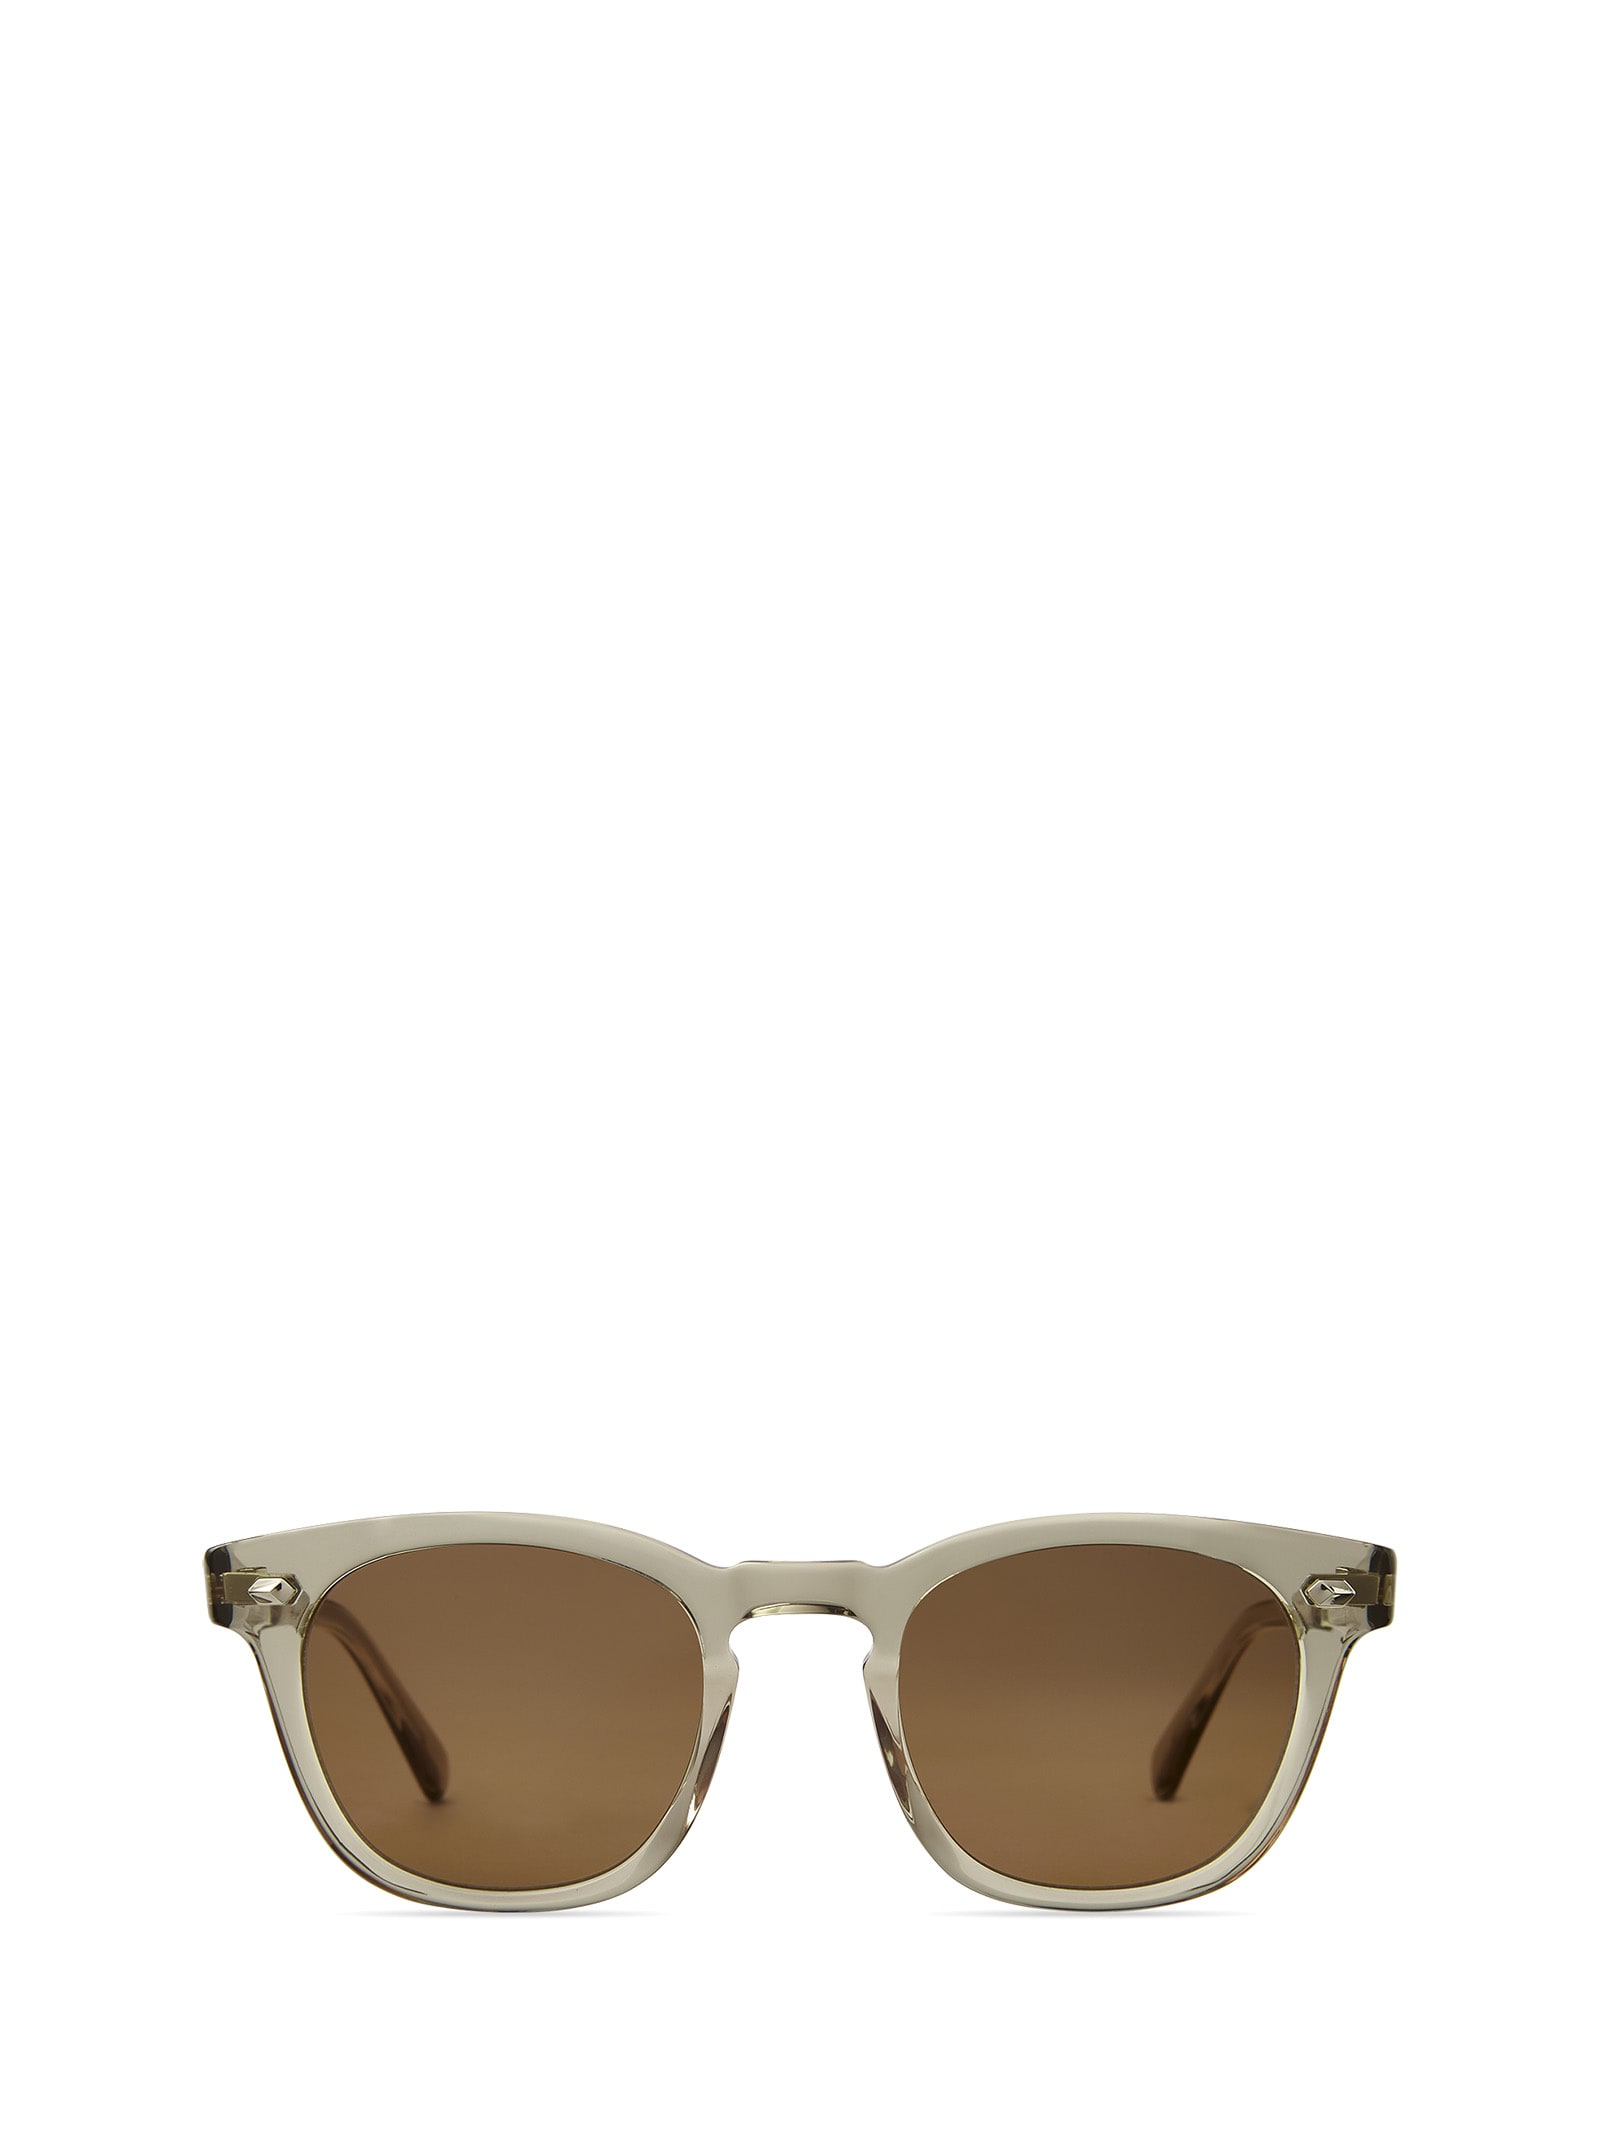 Mr Leight Hanalei S Olivine-white Gold Sunglasses